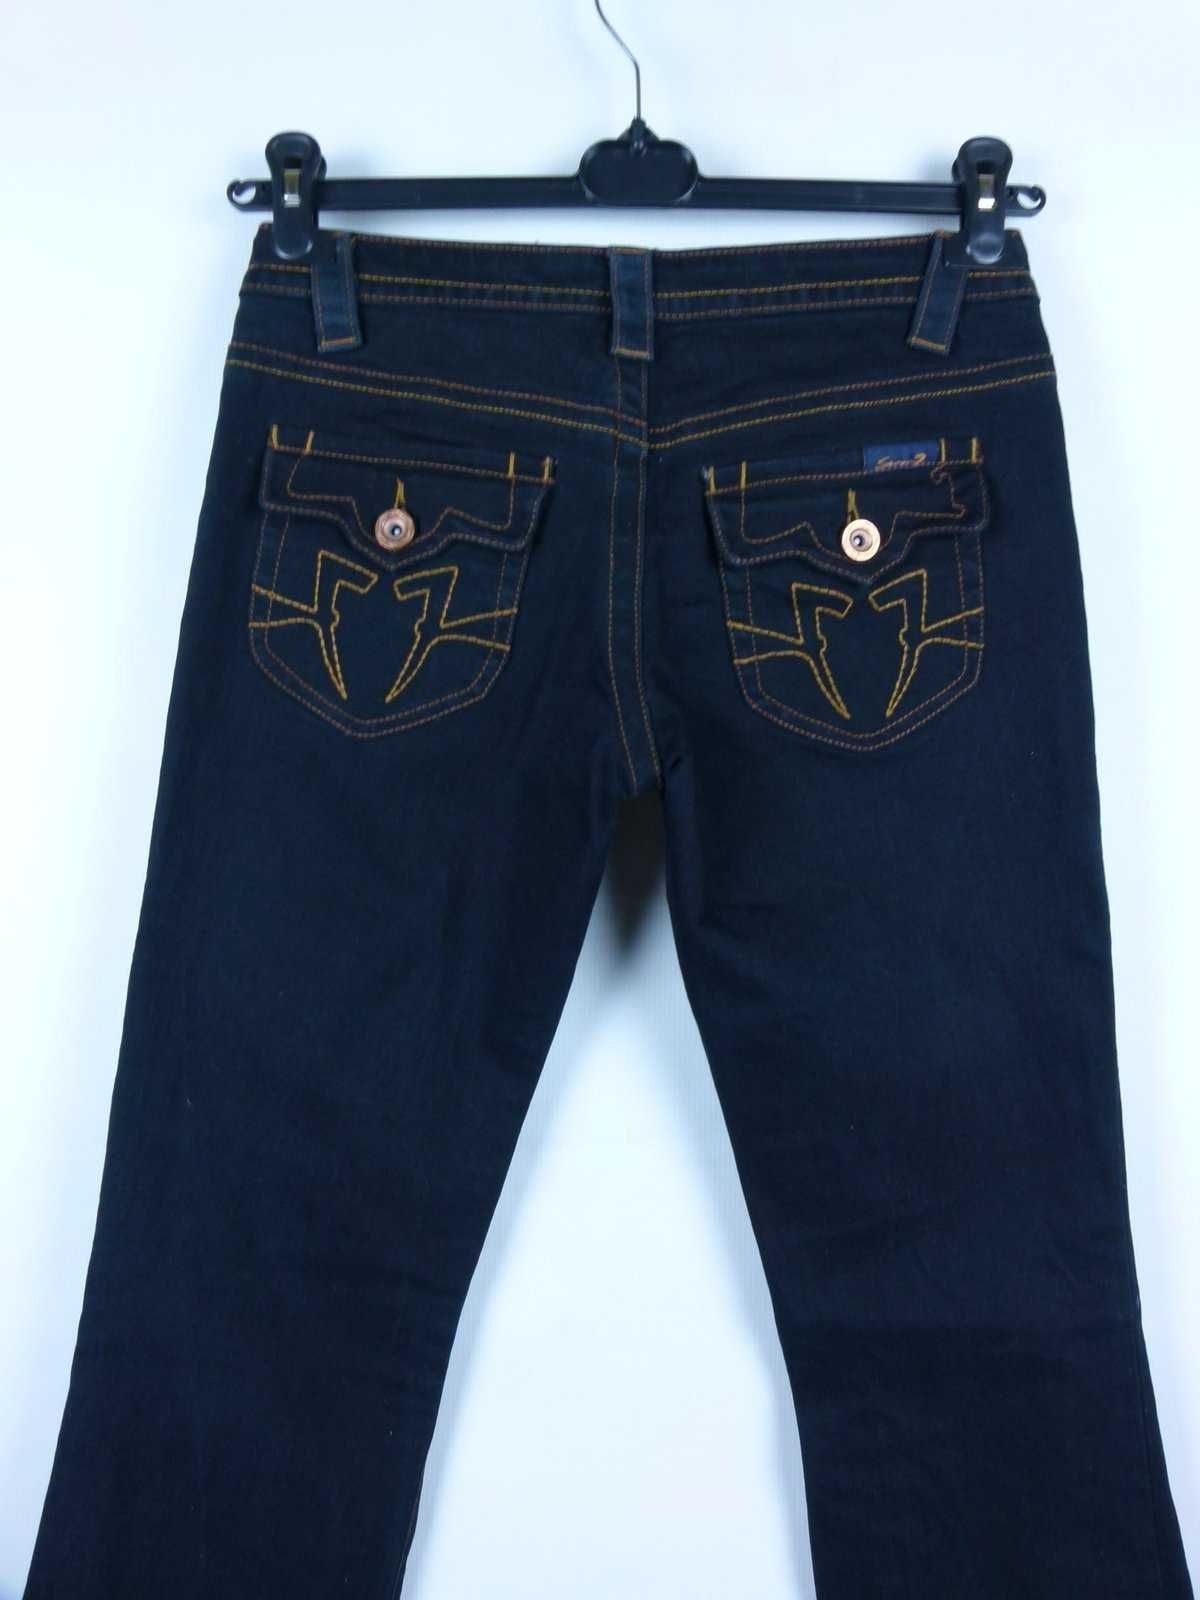 SEVEN 7 spodnie jeans szerokie doły nogawek / 24 pas 80 cm